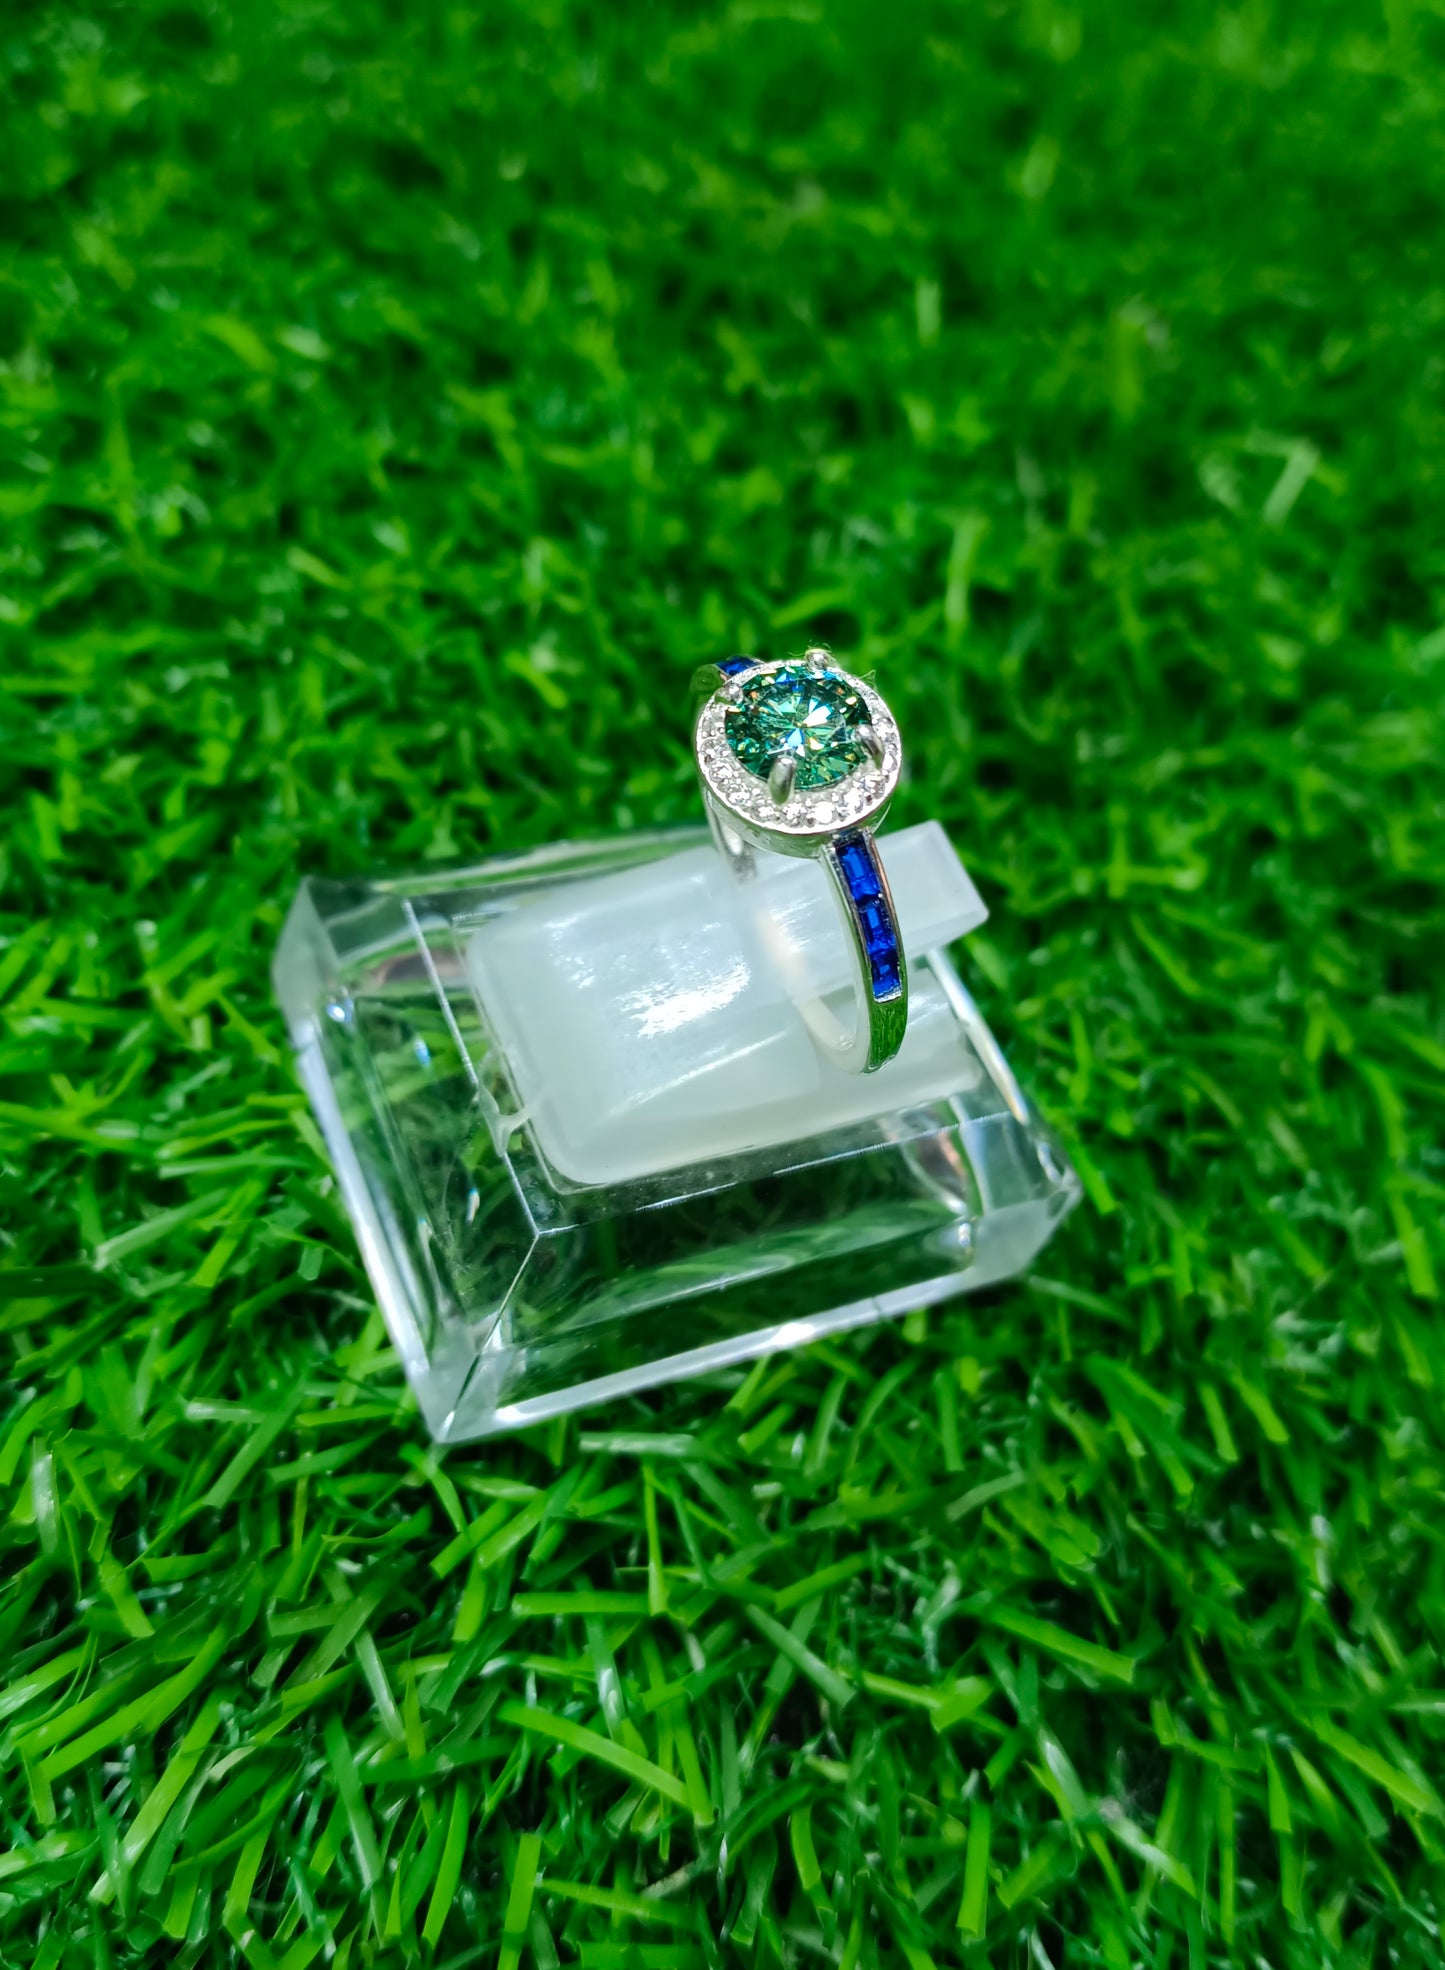 Green Moissanite diamond Ring for ladies